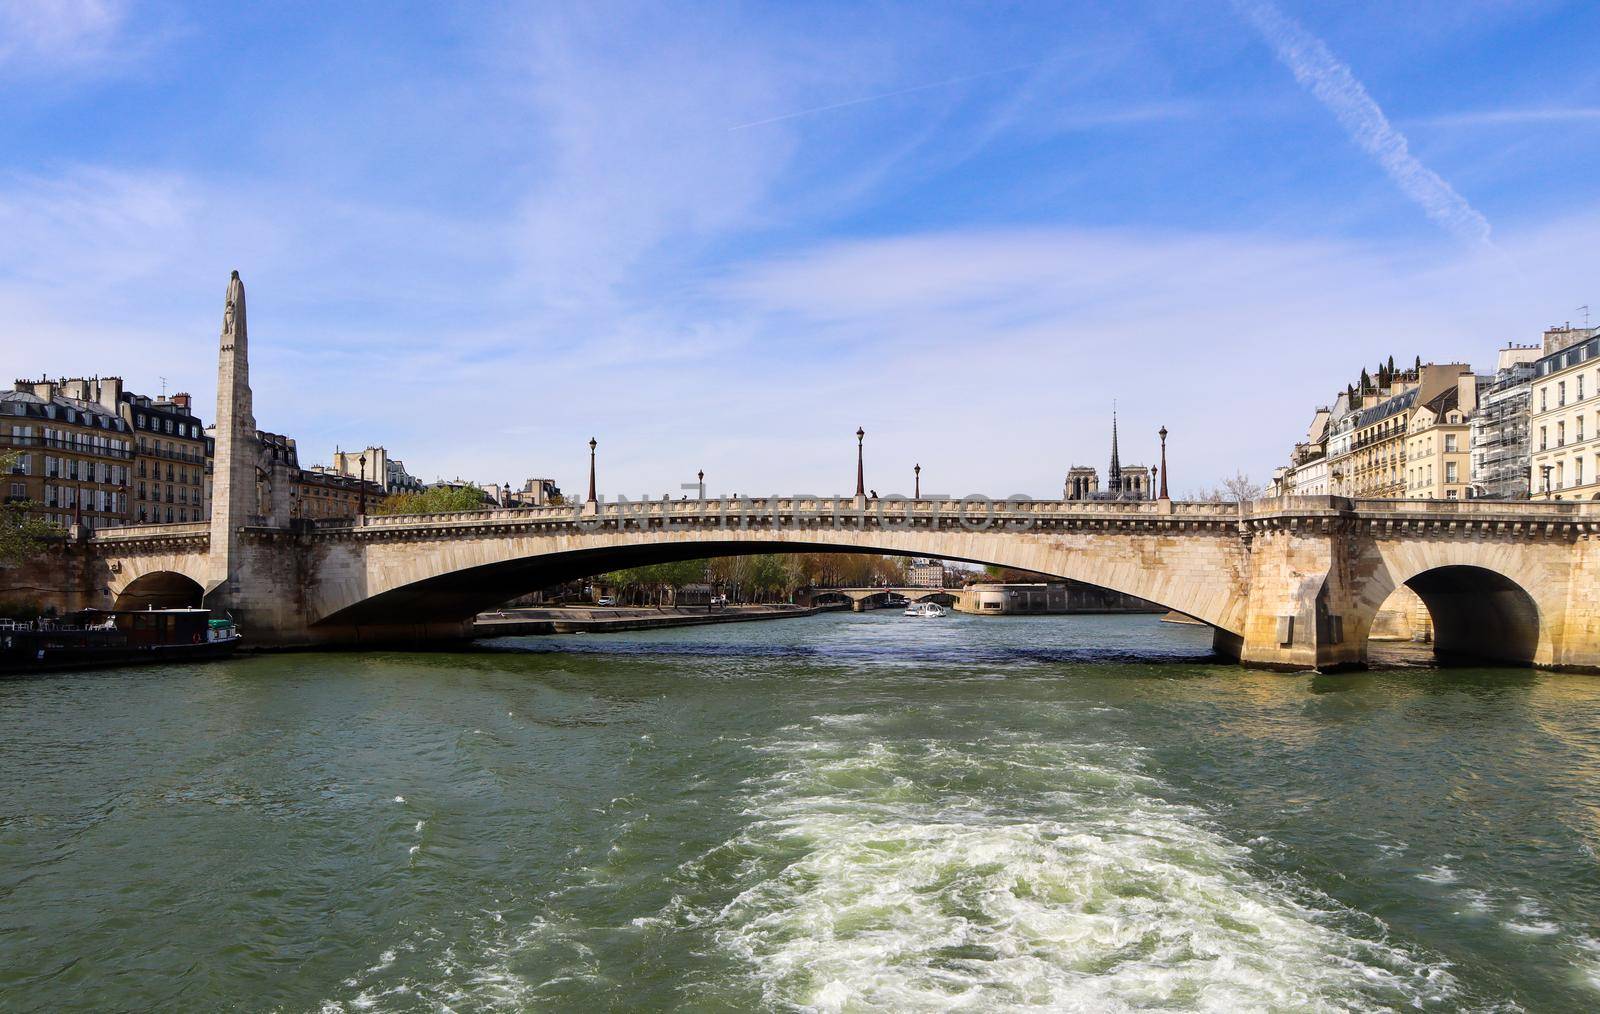 Bridge Pont de la Tournelle across Seine River and beautiful historic buildings of Paris France. April 2019 by Olayola